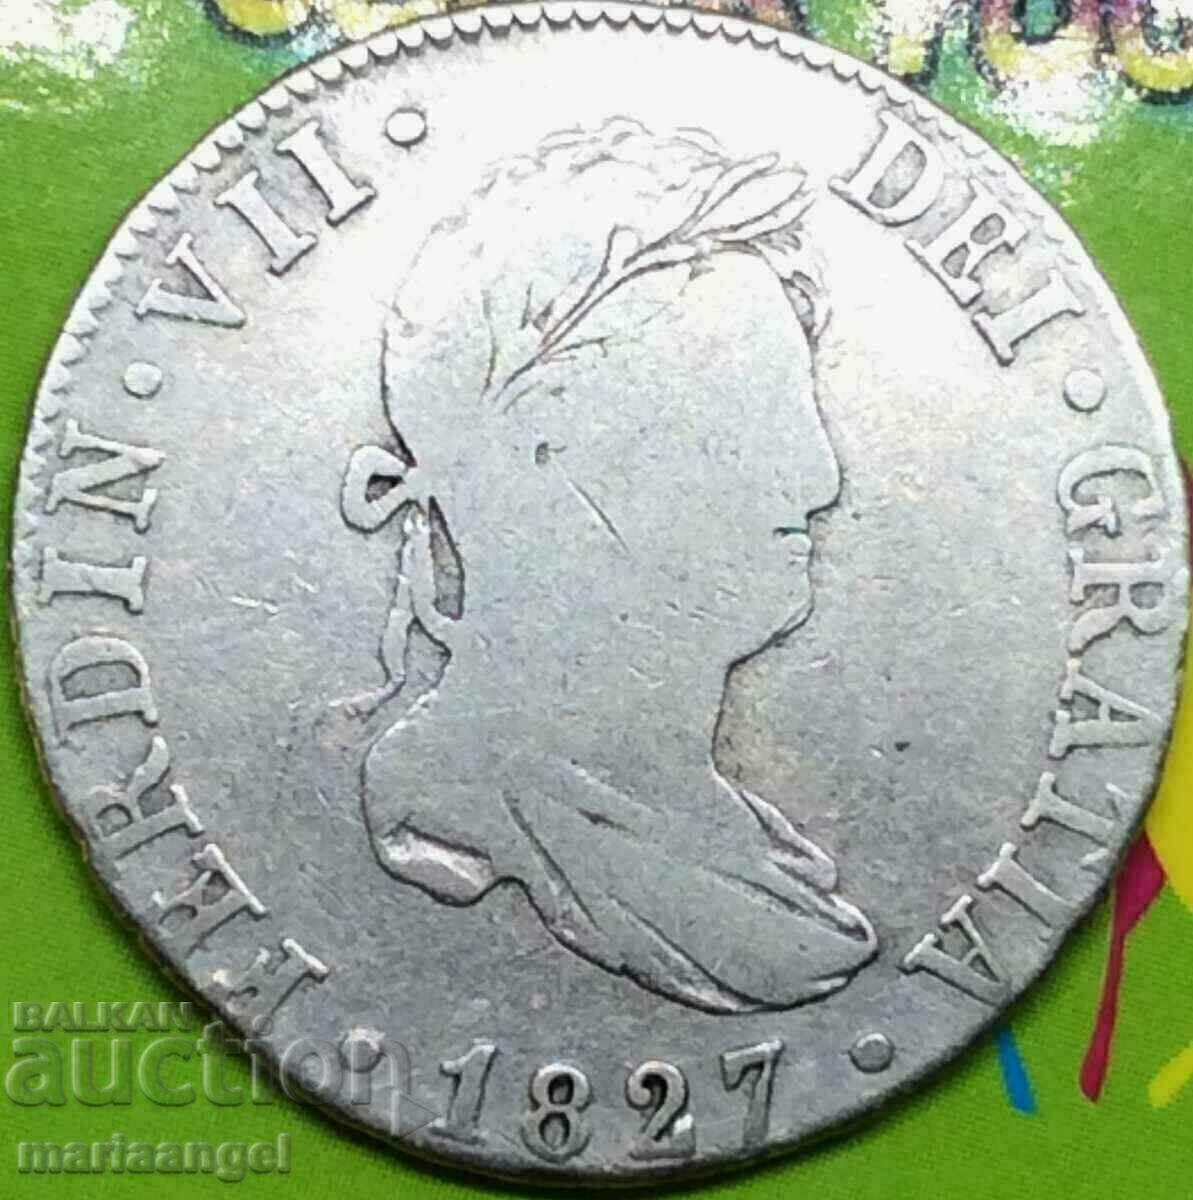 Ισπανία 2 reales 1827 Ferdinand VII 27mm ασήμι - σπάνιο